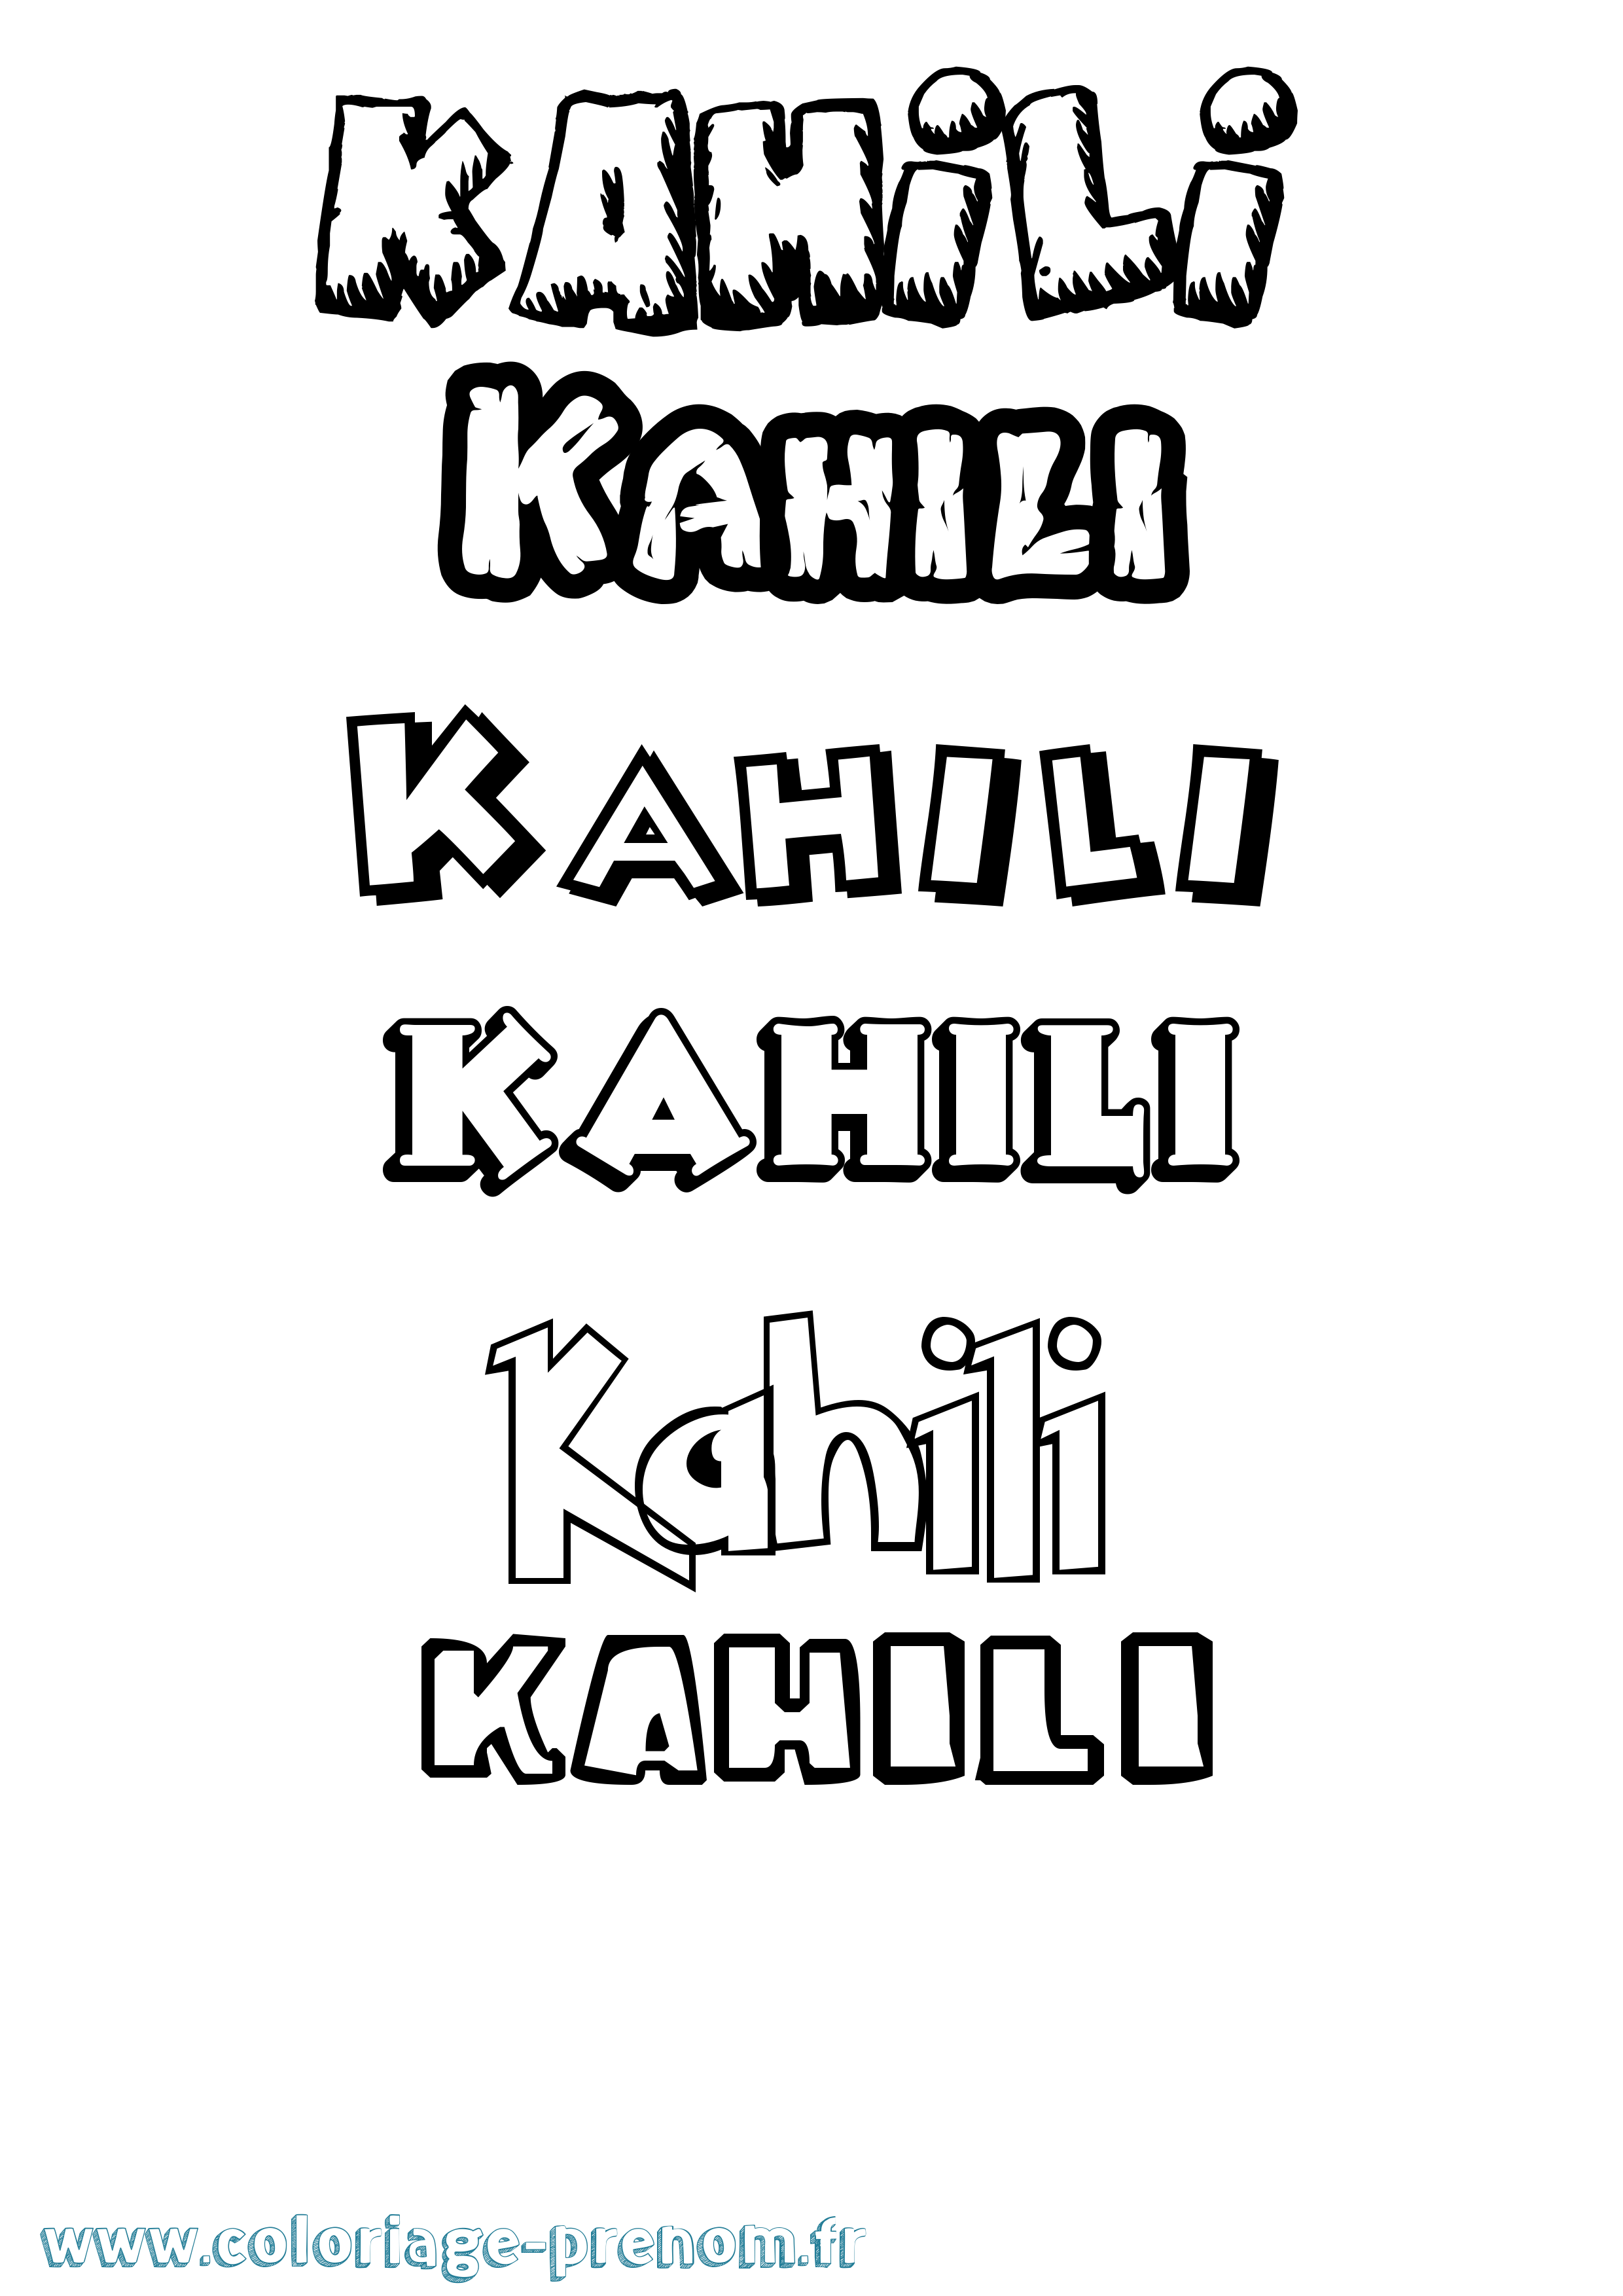 Coloriage prénom Kahili Dessin Animé